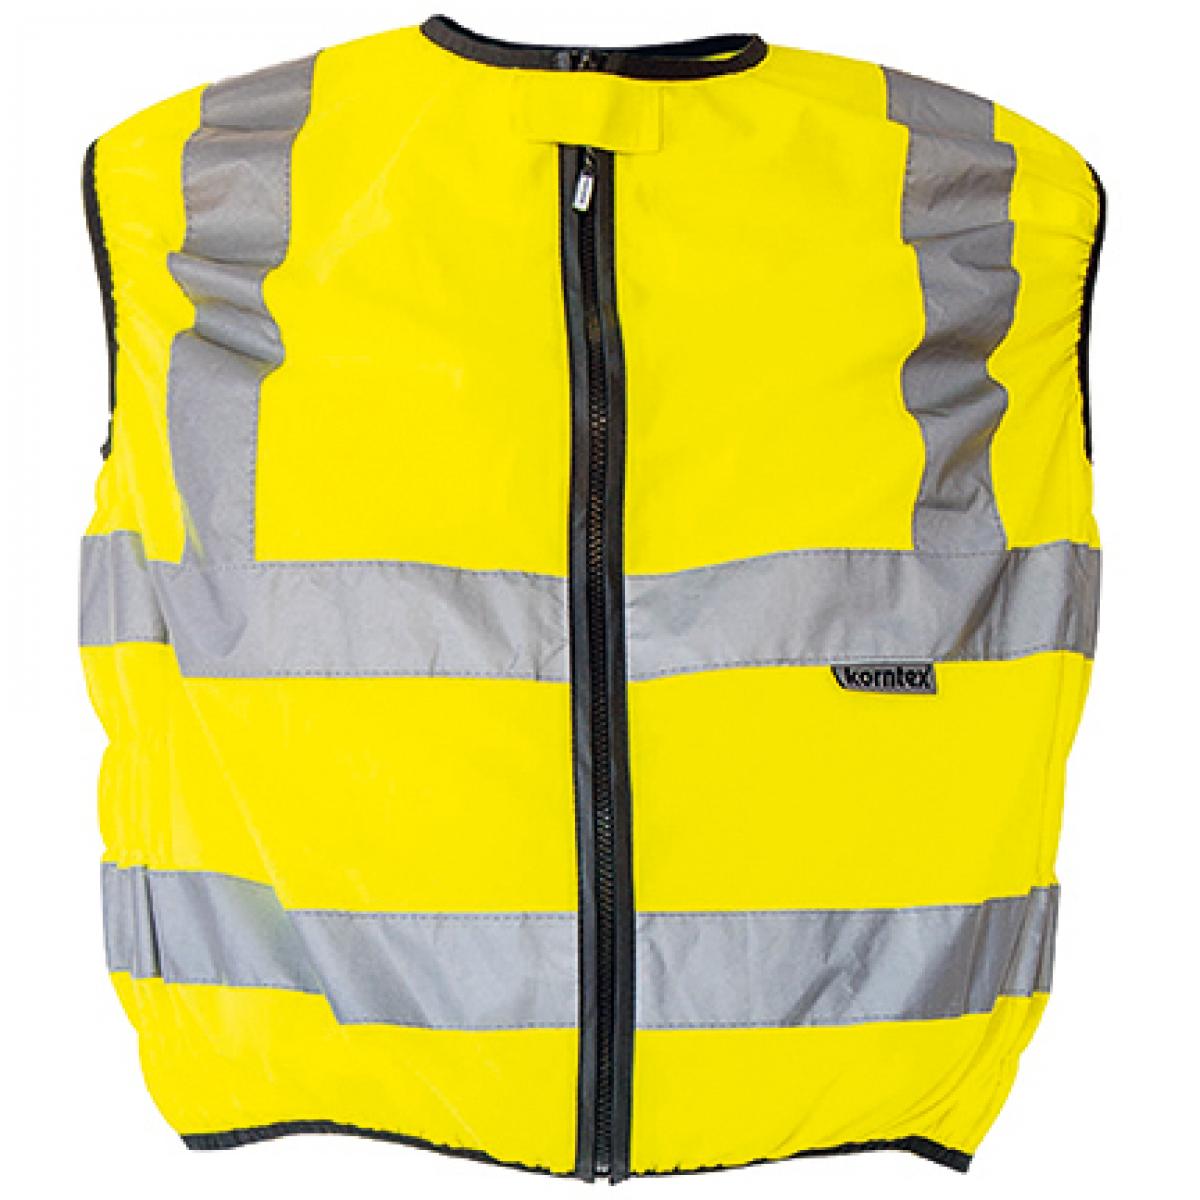 Hersteller: Korntex Herstellernummer: KXMOTOG Artikelbezeichnung: Biker Safety Vest EN ISO 20471 / Zertifiziert nach EN ISO204 Farbe: Signal Yellow